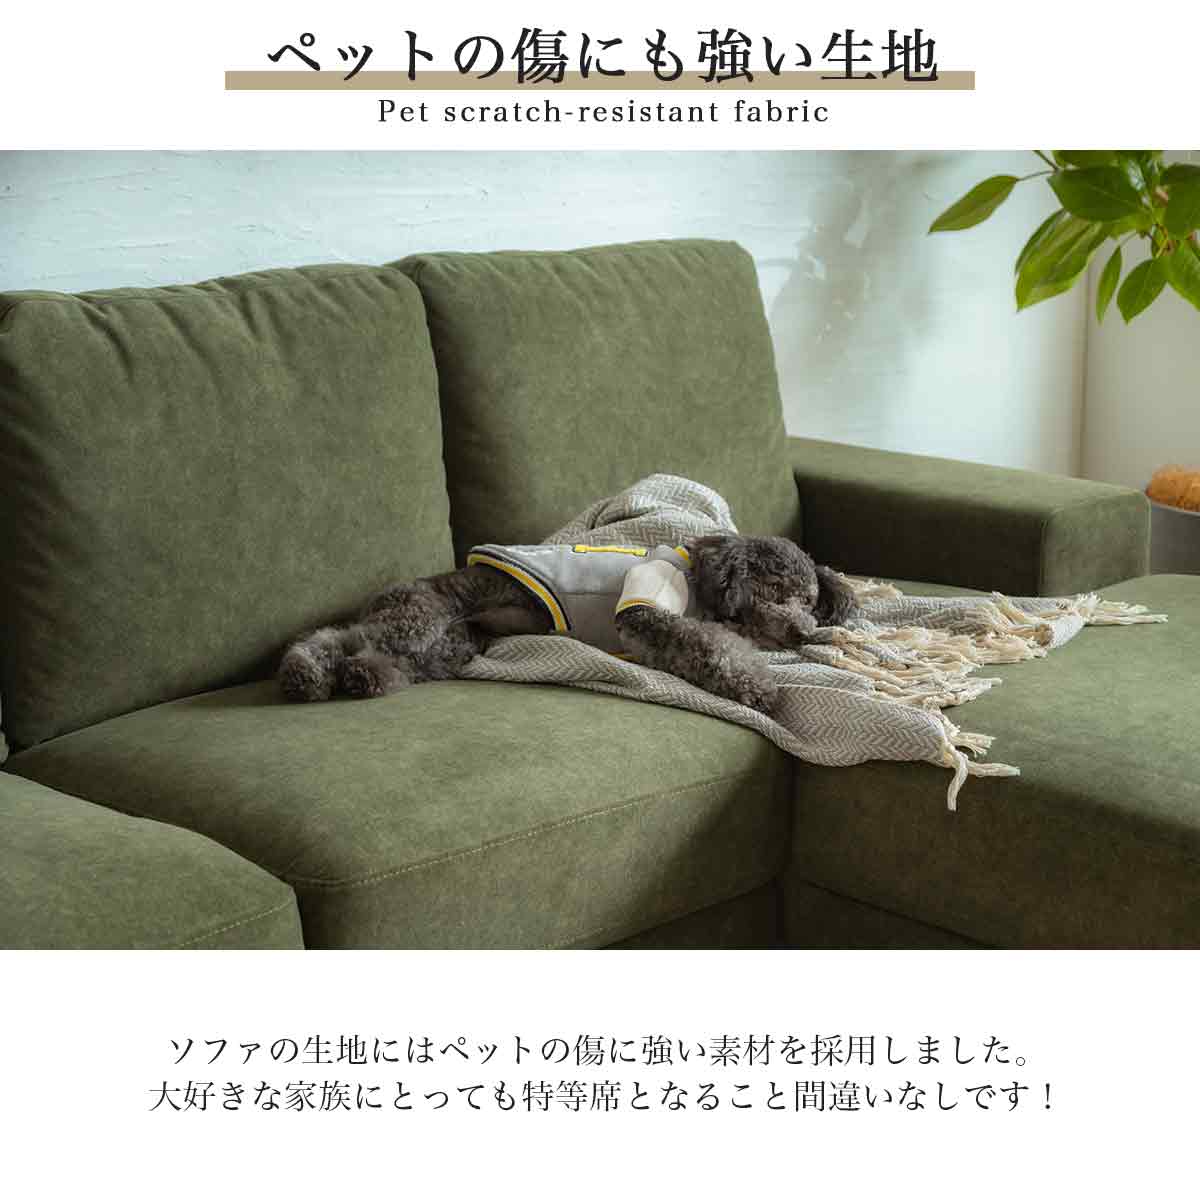 F01129_カウチソファ カウチ 猫の 爪 に強い 犬 ペット ソファー 幅230 カウチ 組み合わせソファ 組合せ 北欧 韓国風 家族 リビング  韓国インテリア グリーン ナチュラル